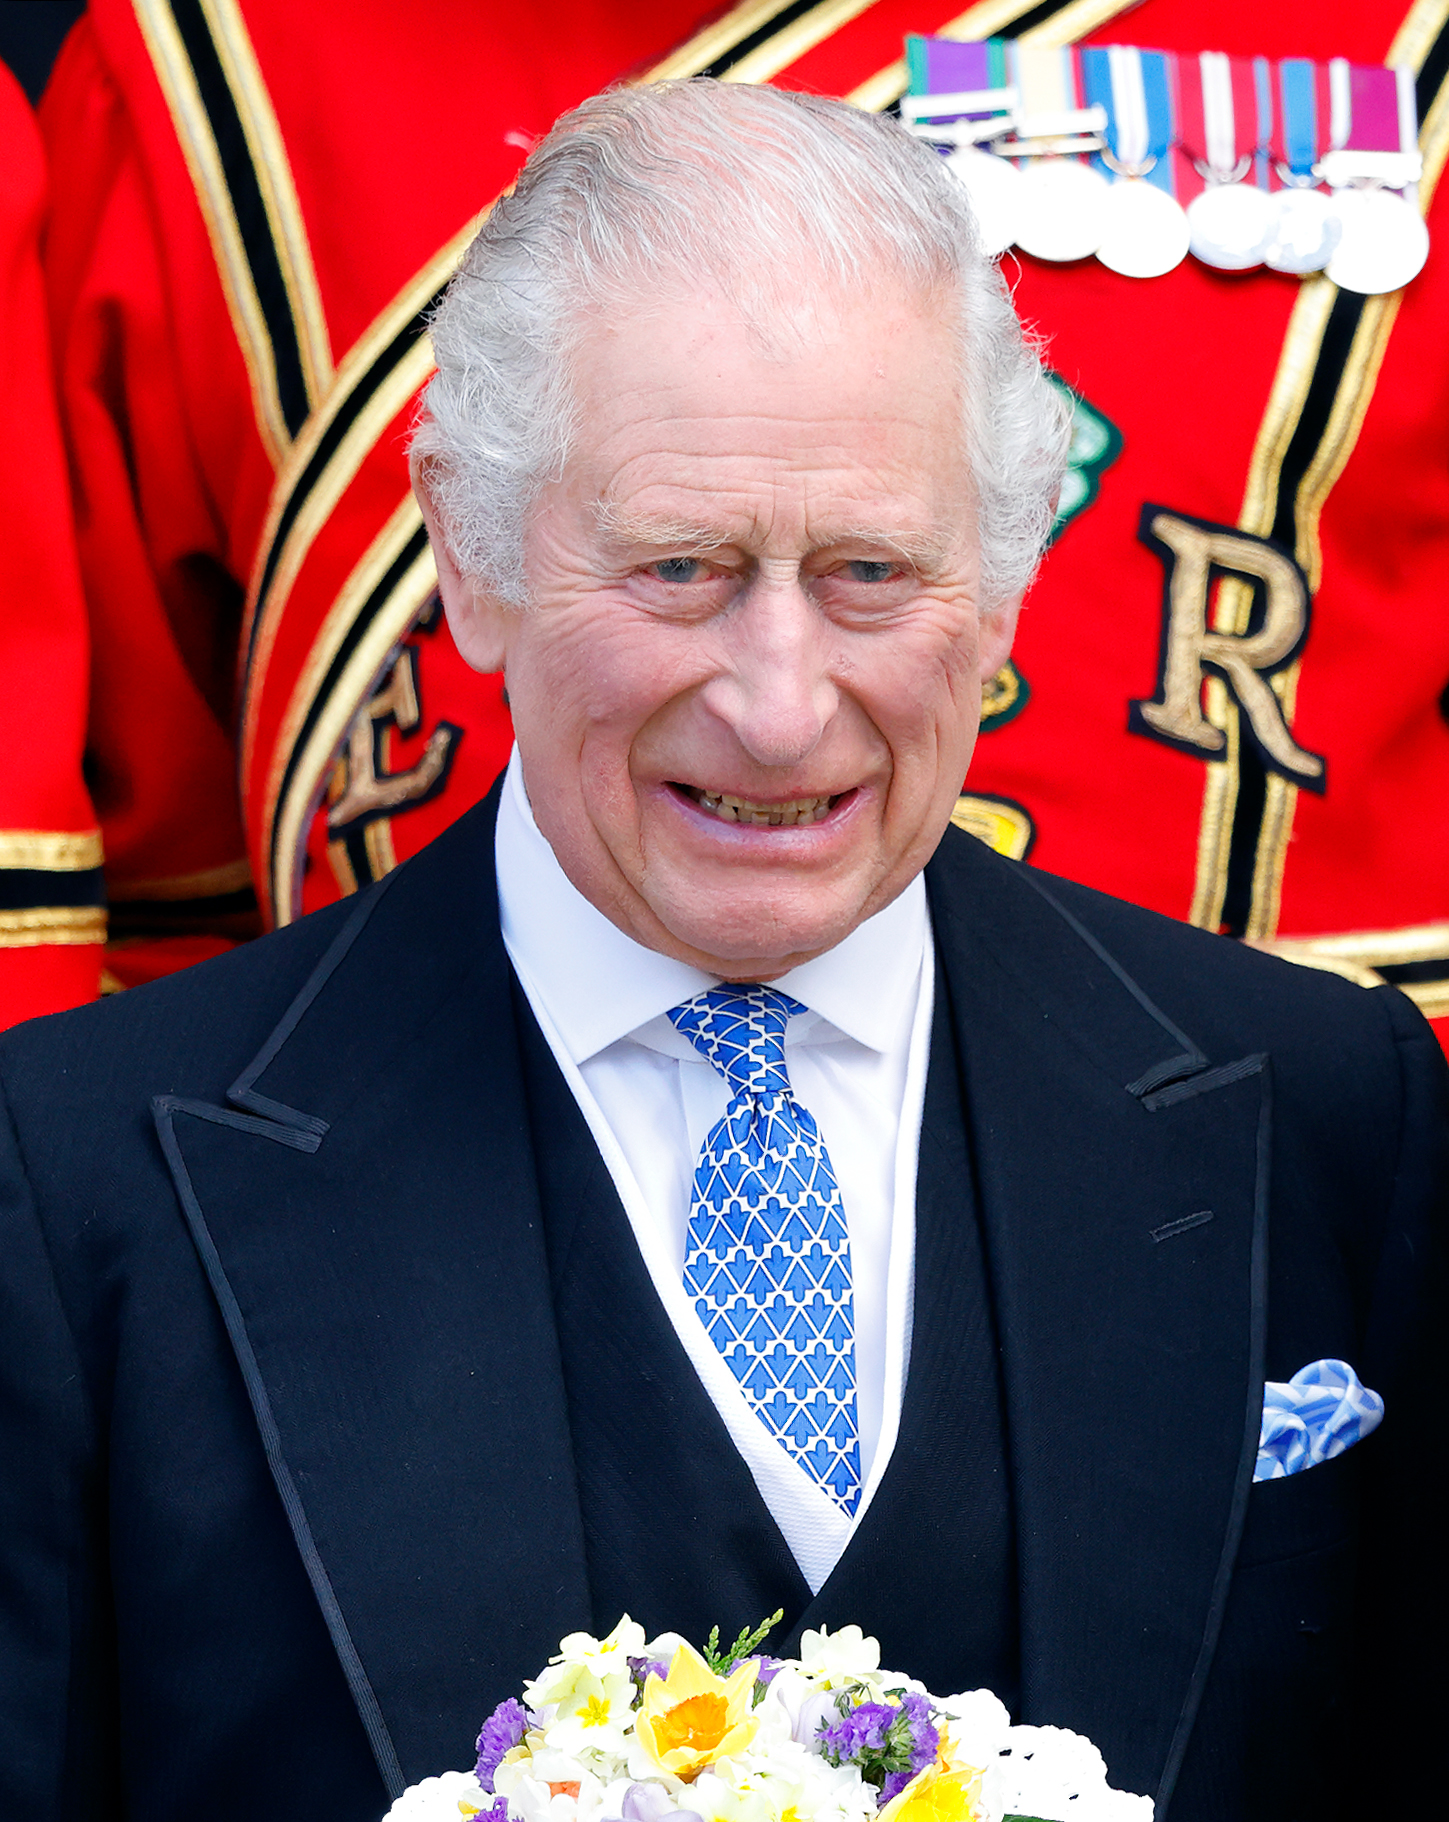 El rey Charles III asiste al Servicio Real de Pentecostés en York Minster el 6 de abril de 2023 en York, Inglaterra | Fuente: Getty Images